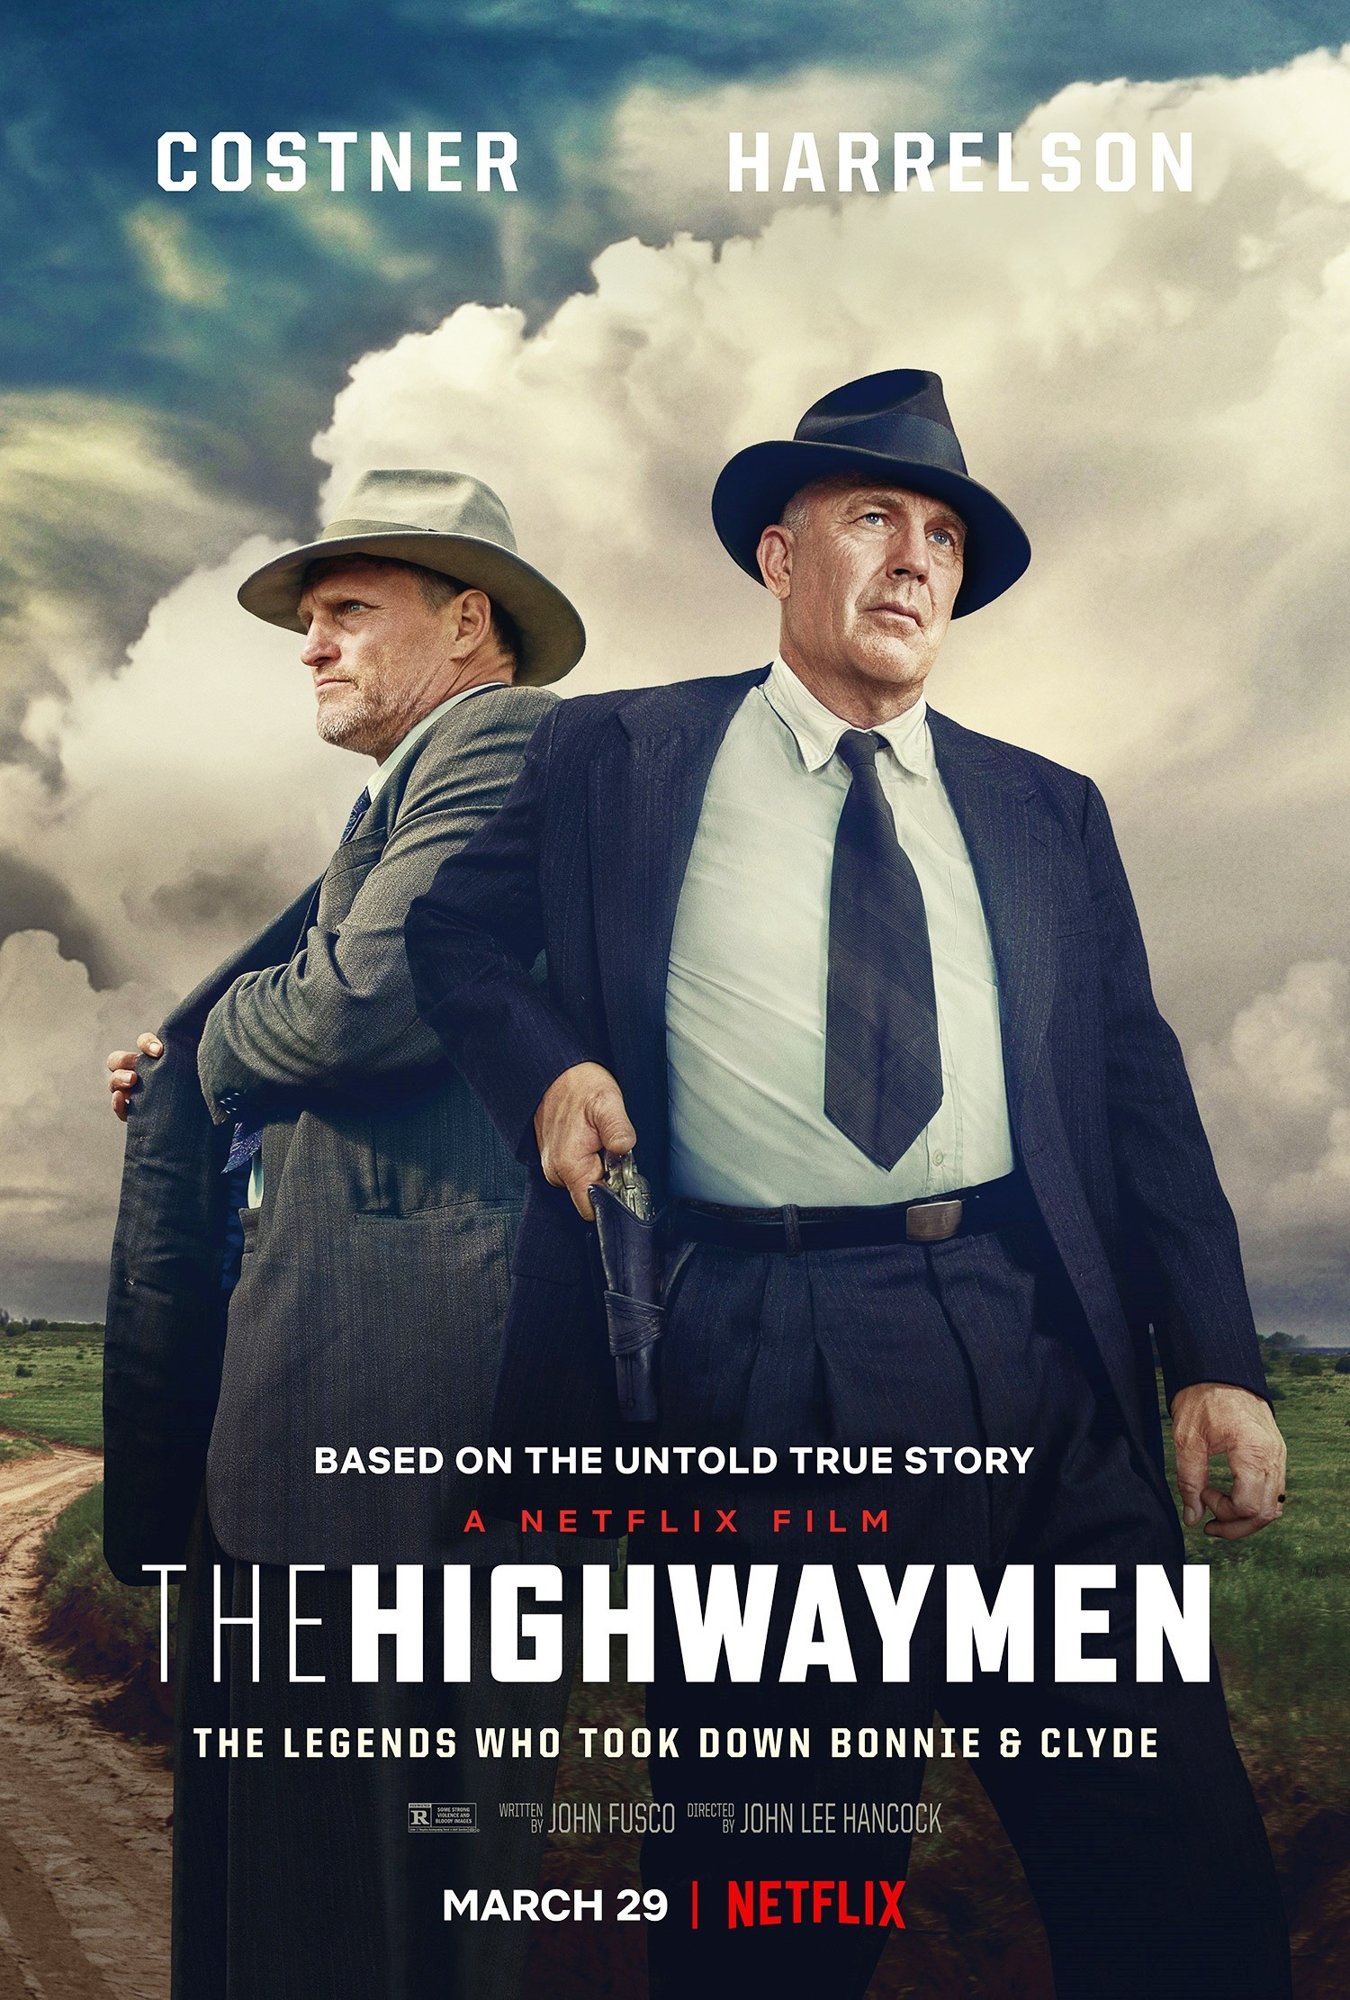 Poster of Netflix's The Highwaymen (2019)